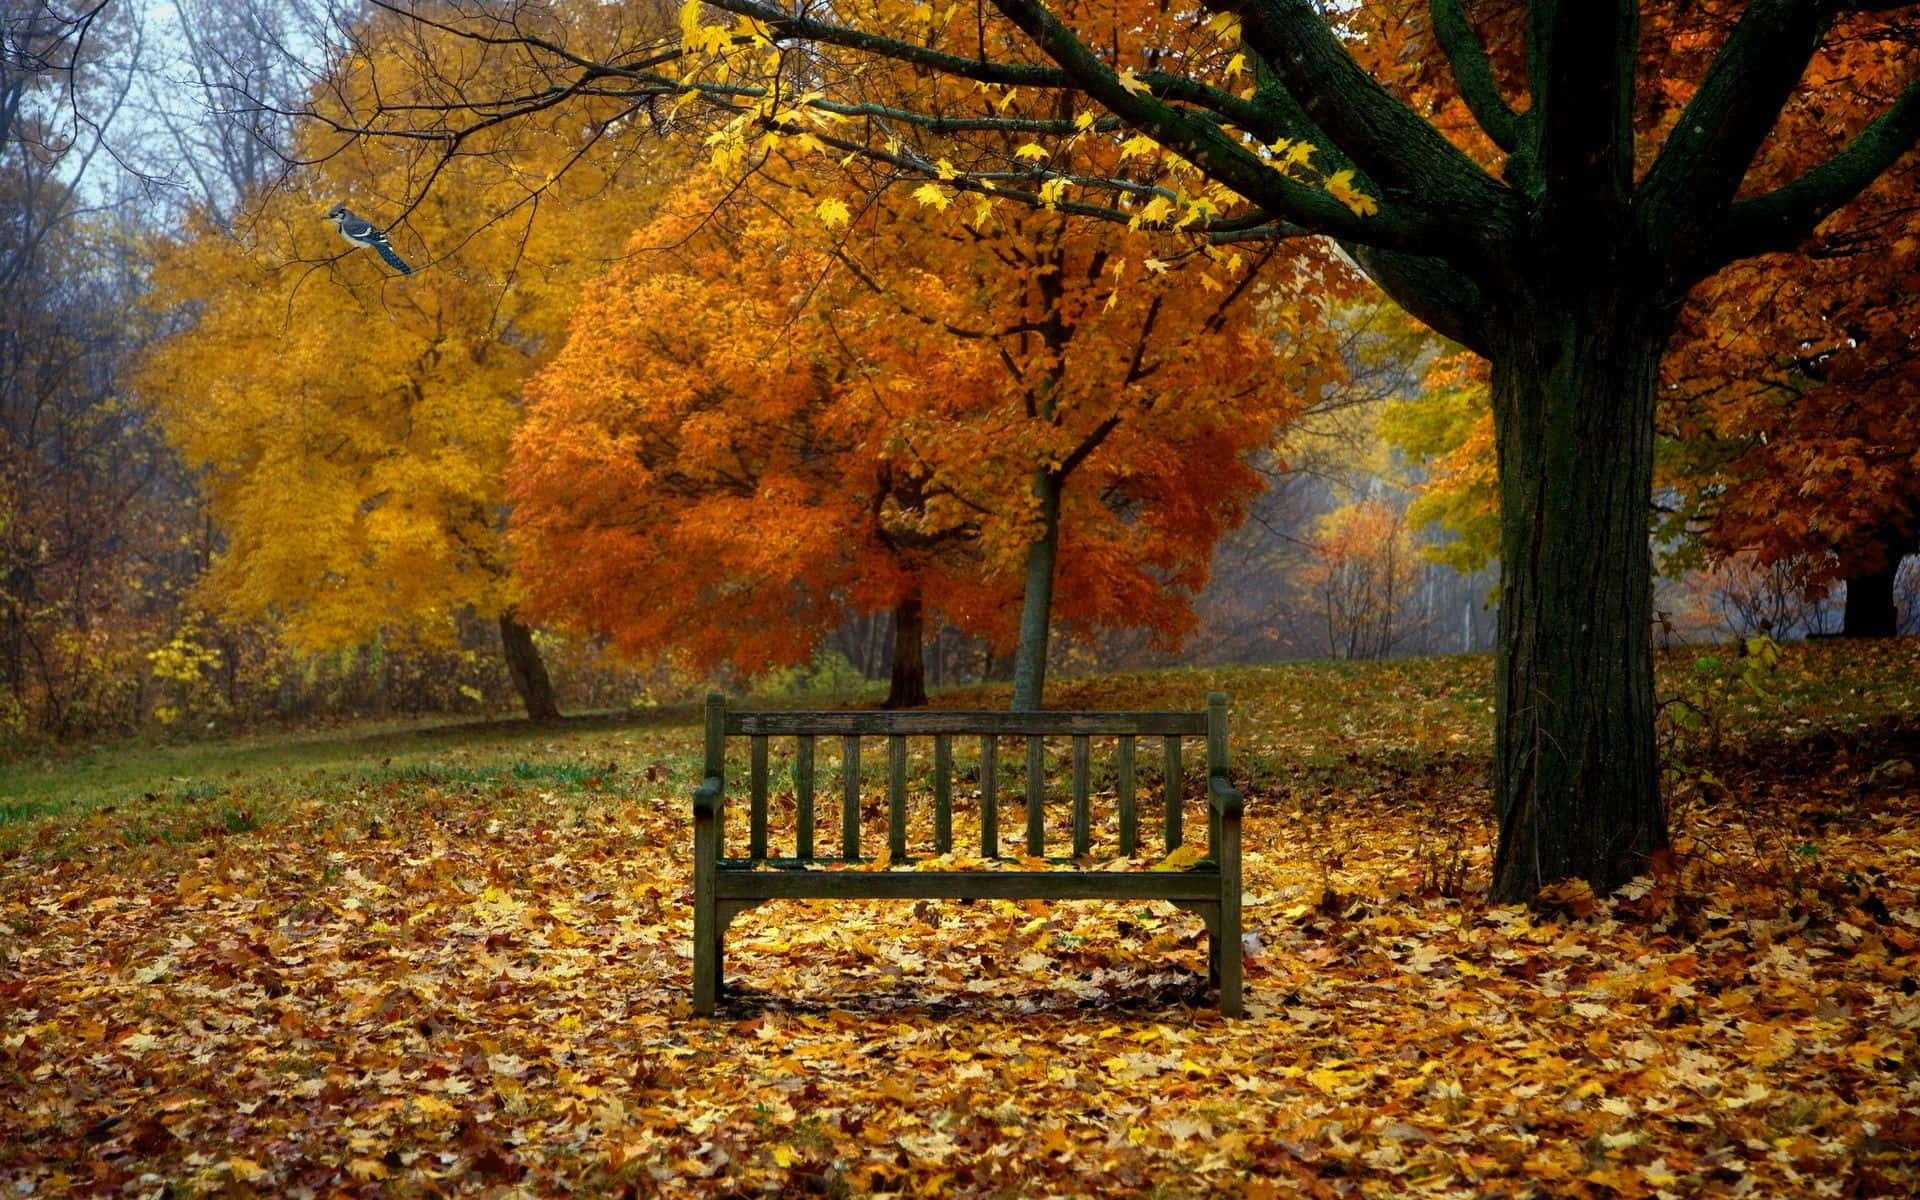 Tag en spadseretur og nyd den smukke tidlige efterårsscene Wallpaper